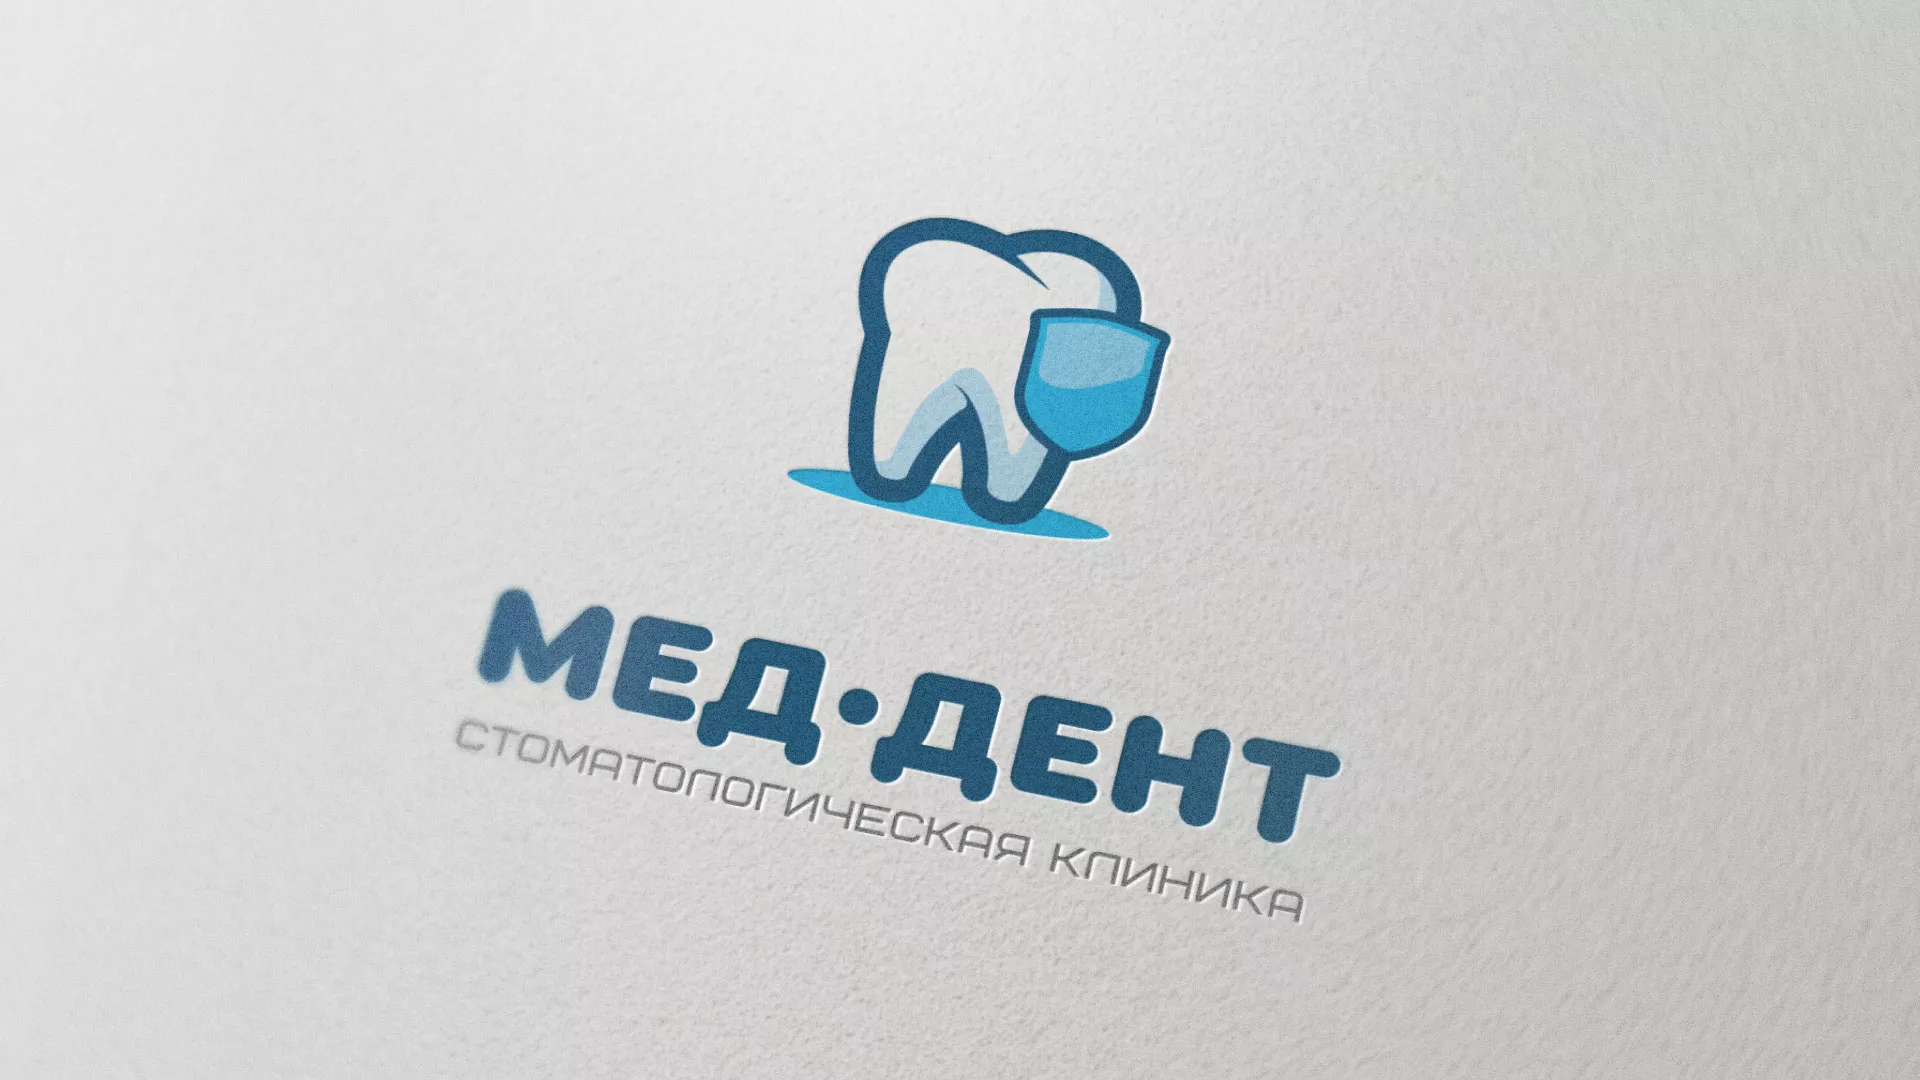 Разработка логотипа стоматологической клиники «МЕД-ДЕНТ» в Андреаполе